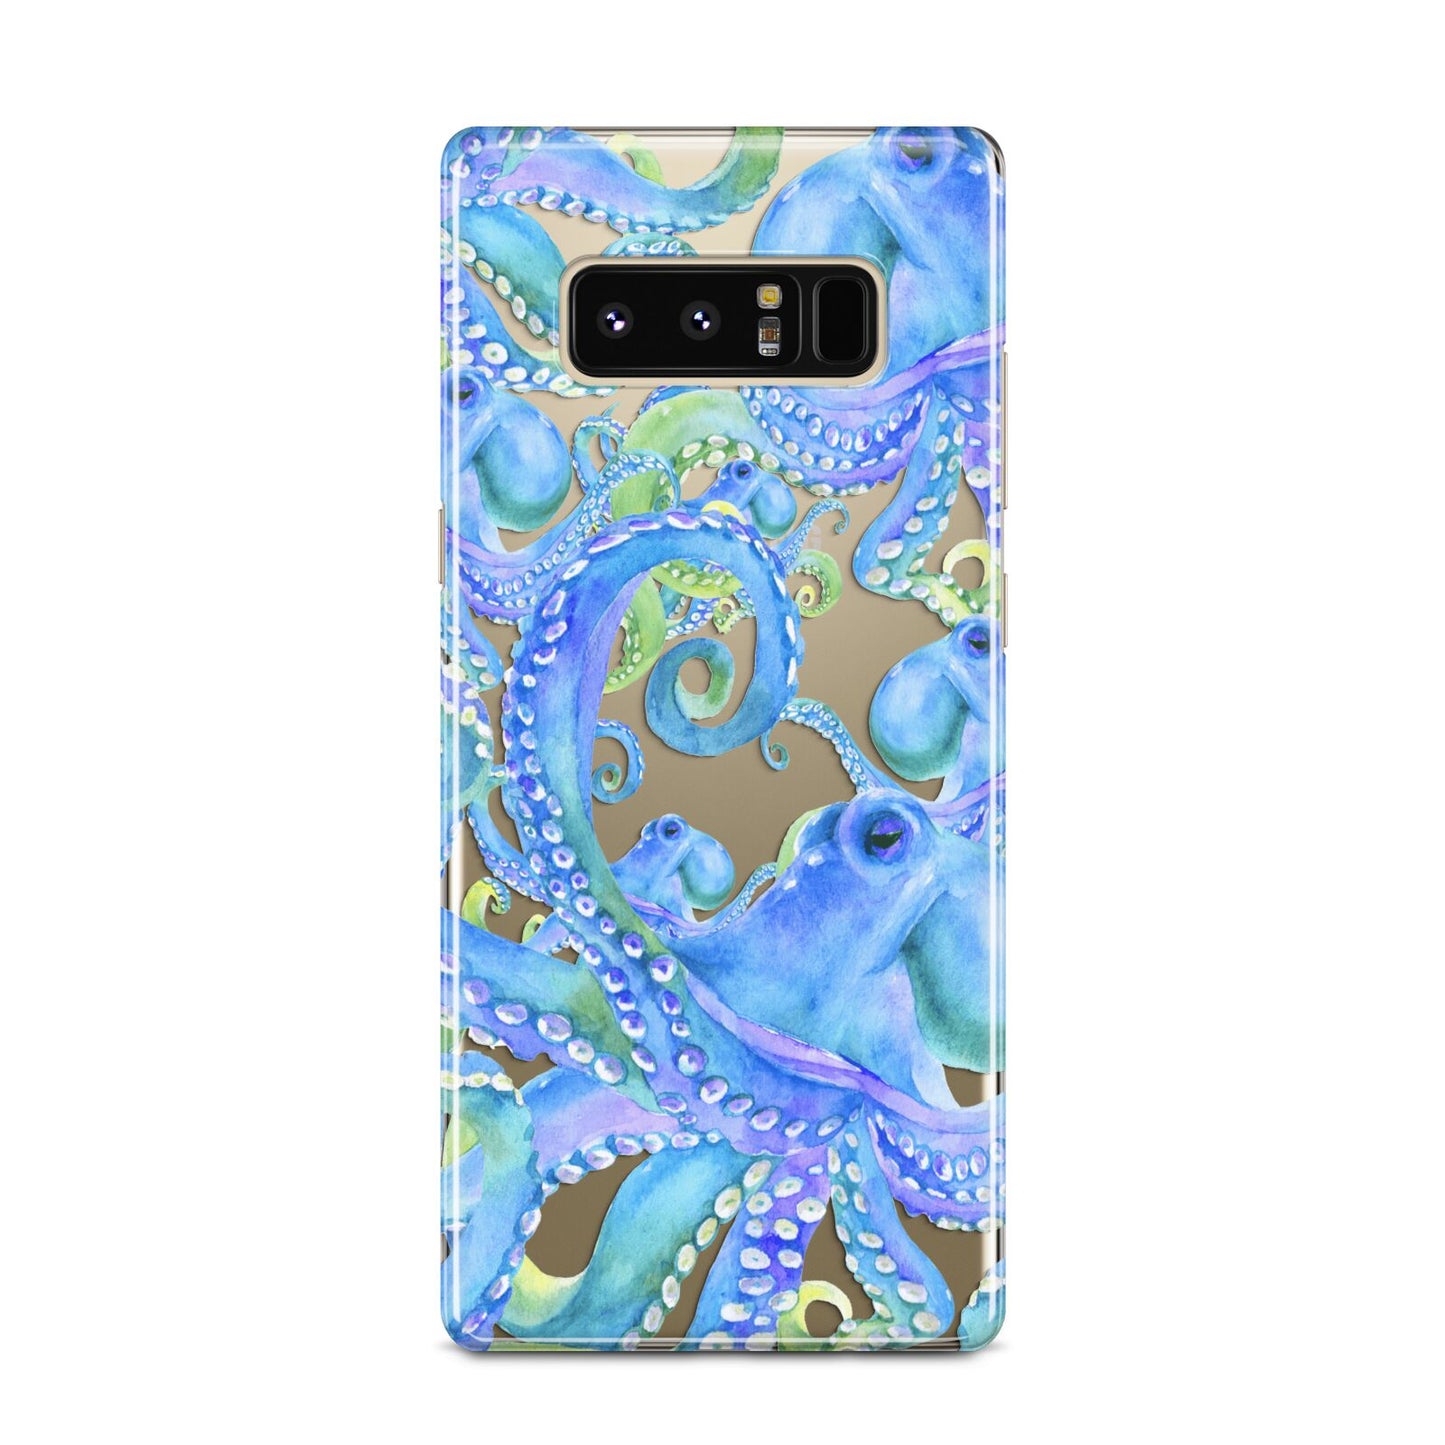 Octopus Samsung Galaxy Note 8 Case